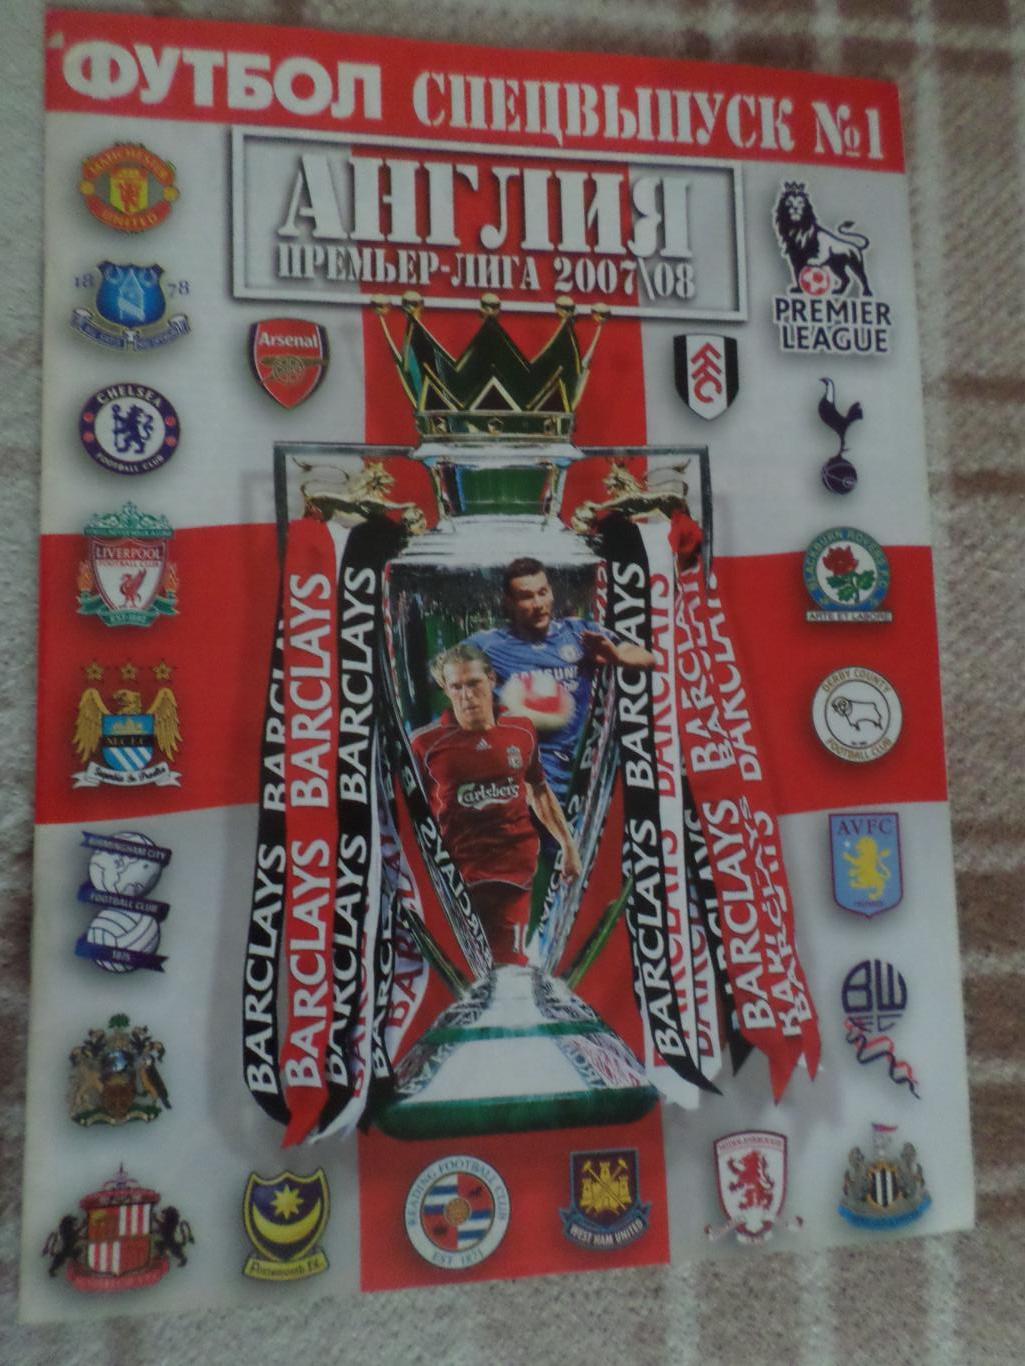 Еженедельник Футбол (Киев) спецвыпуск № 1 2007 г Англия Премьер-лига 2007-2008